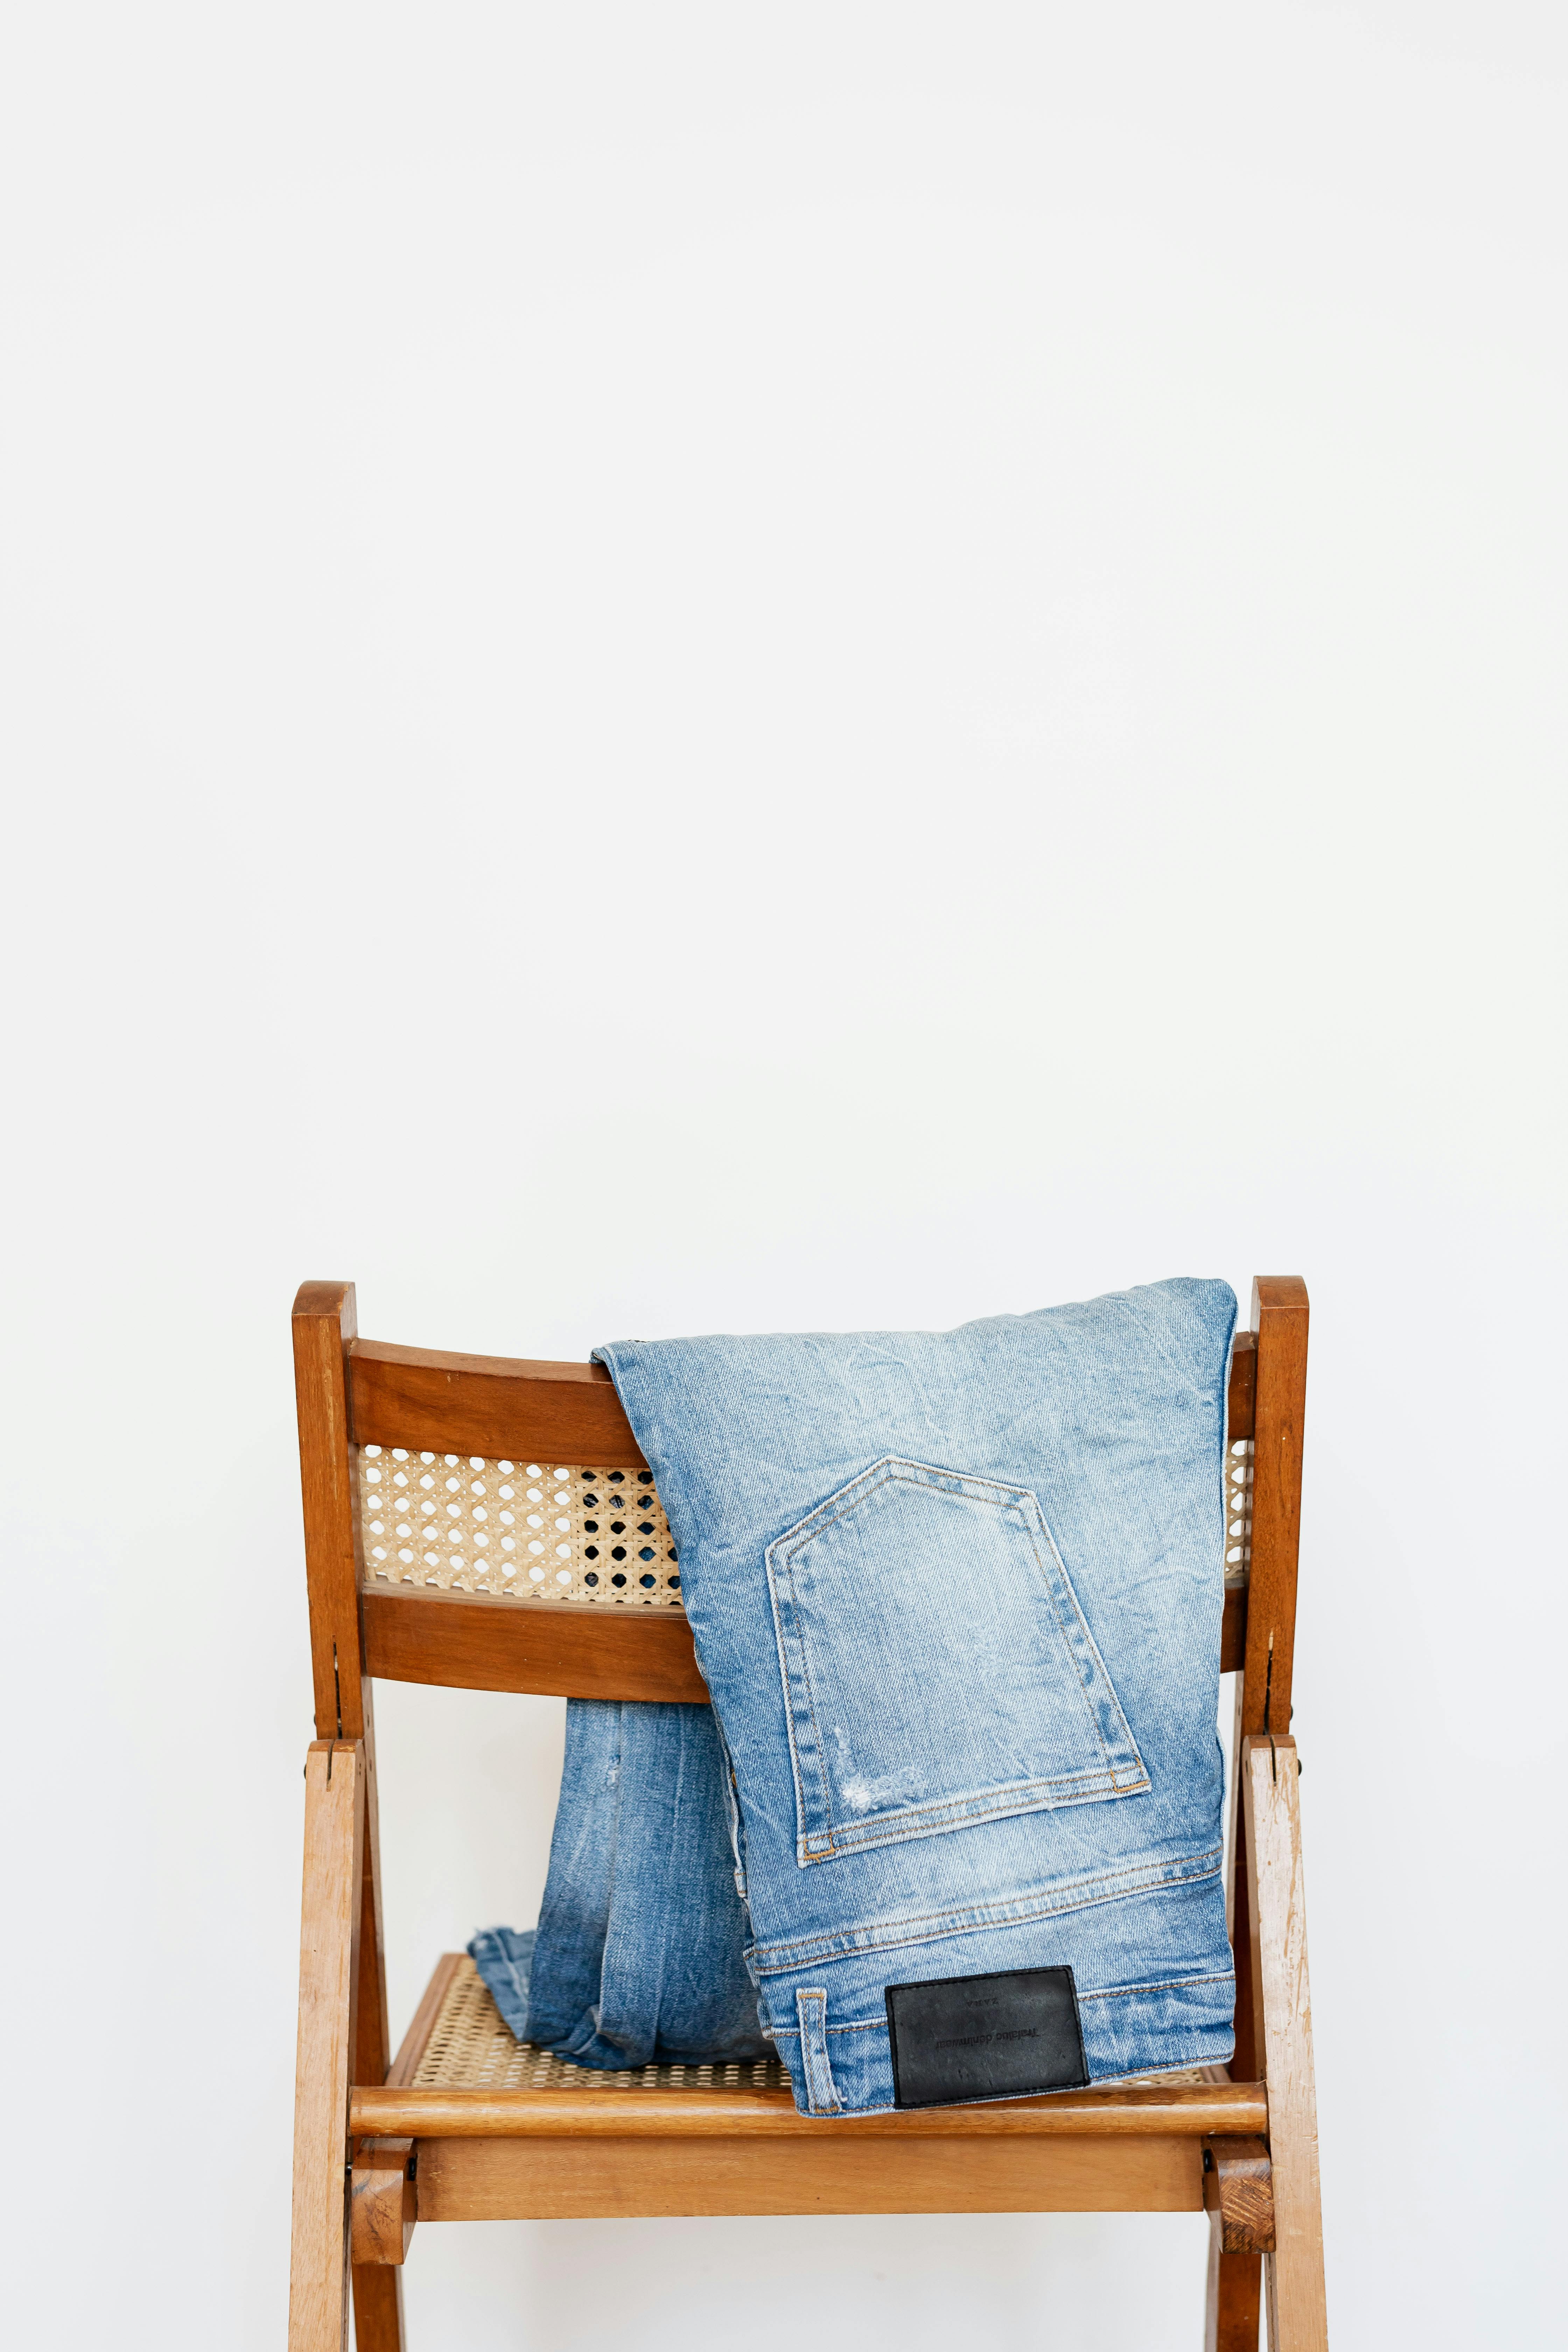 Unos jeans colgados de una silla | Fuente: Pexels